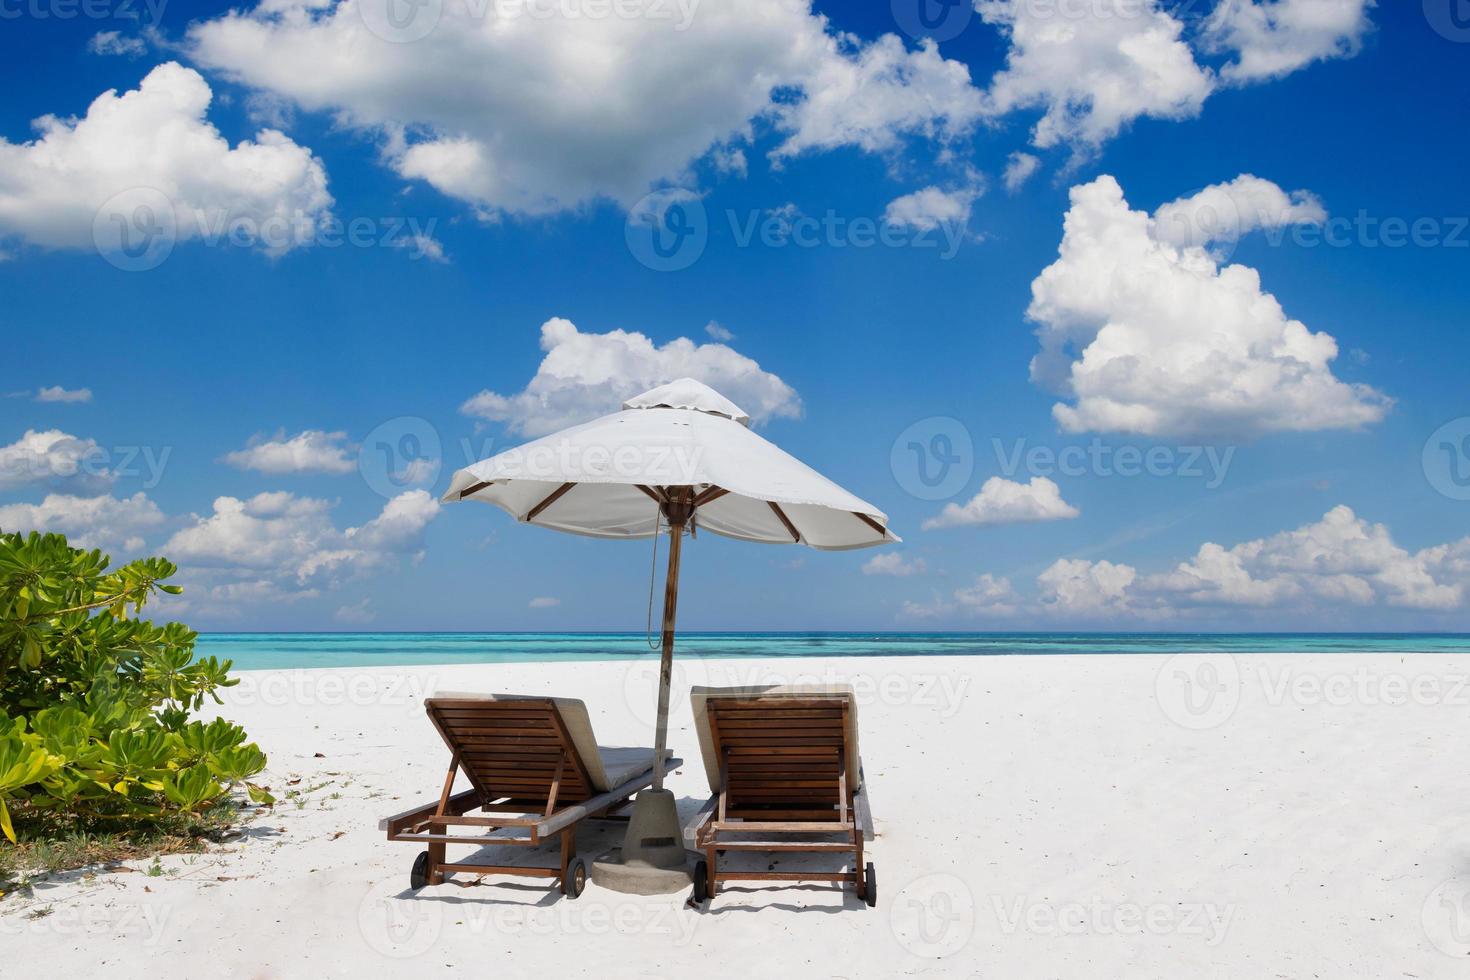 tropische Strandnatur als Sommerlandschaft mit Liegestühlen und Palmen und ruhigem Meer für Strandbanner. luxuriöse reiselandschaft, schönes ziel für urlaub oder urlaub. Strandszene foto